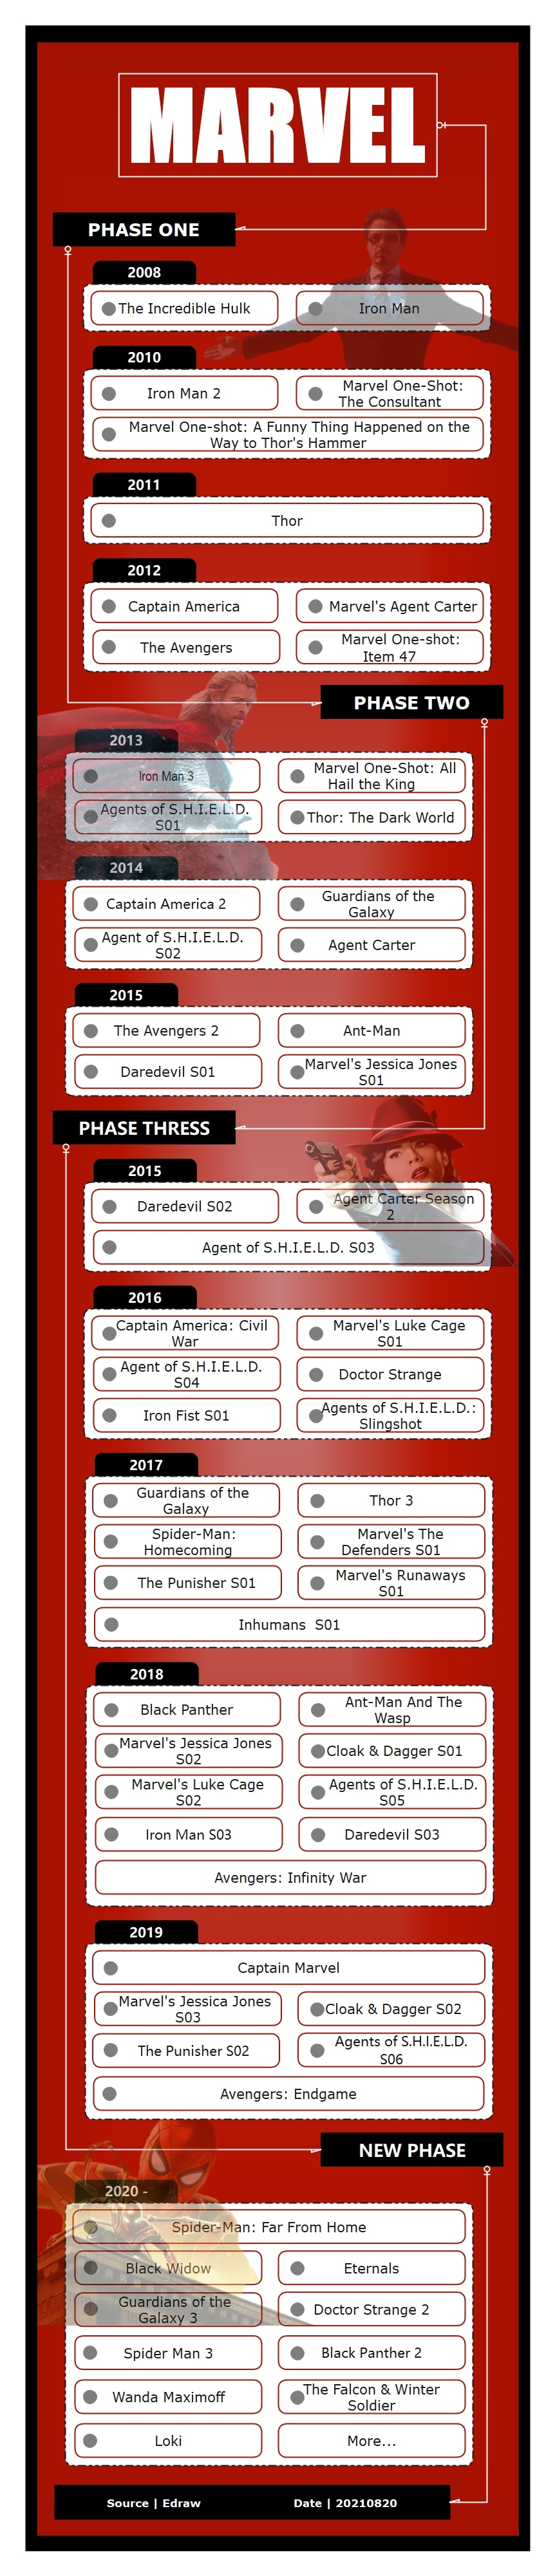 marvel movies timeline